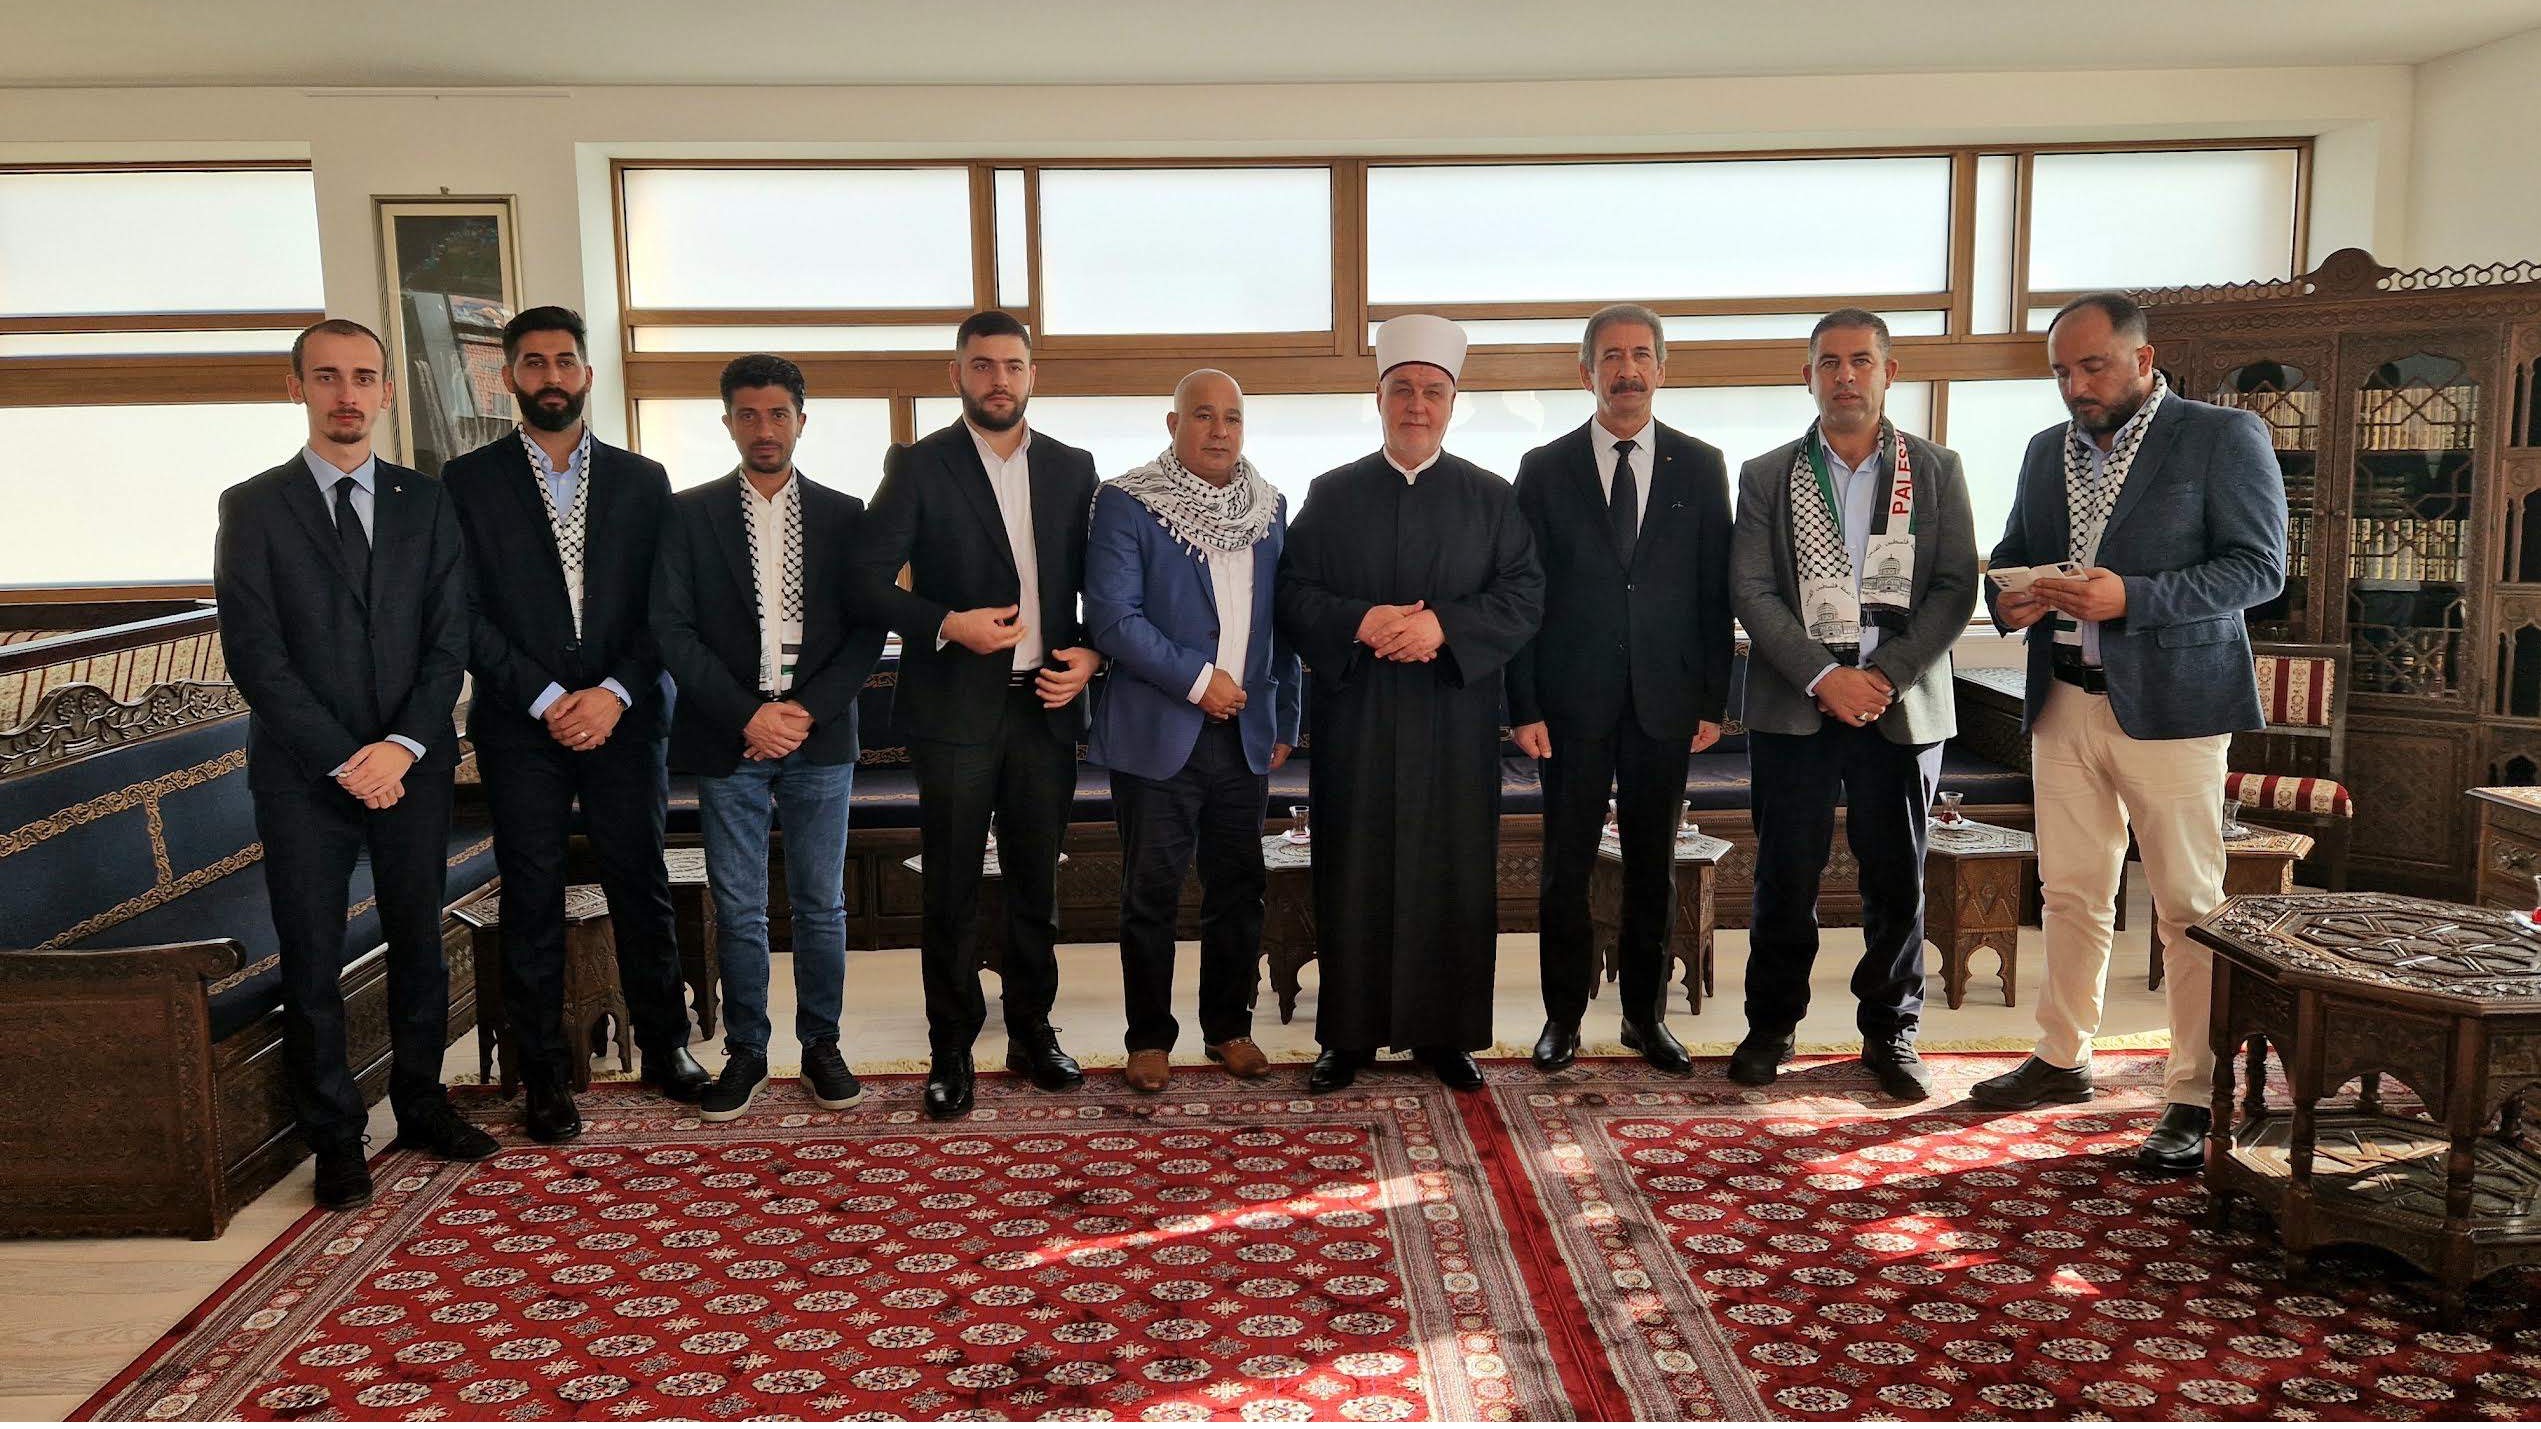 Reisul-ulemu posjetila palestinska omladinska delegacija 